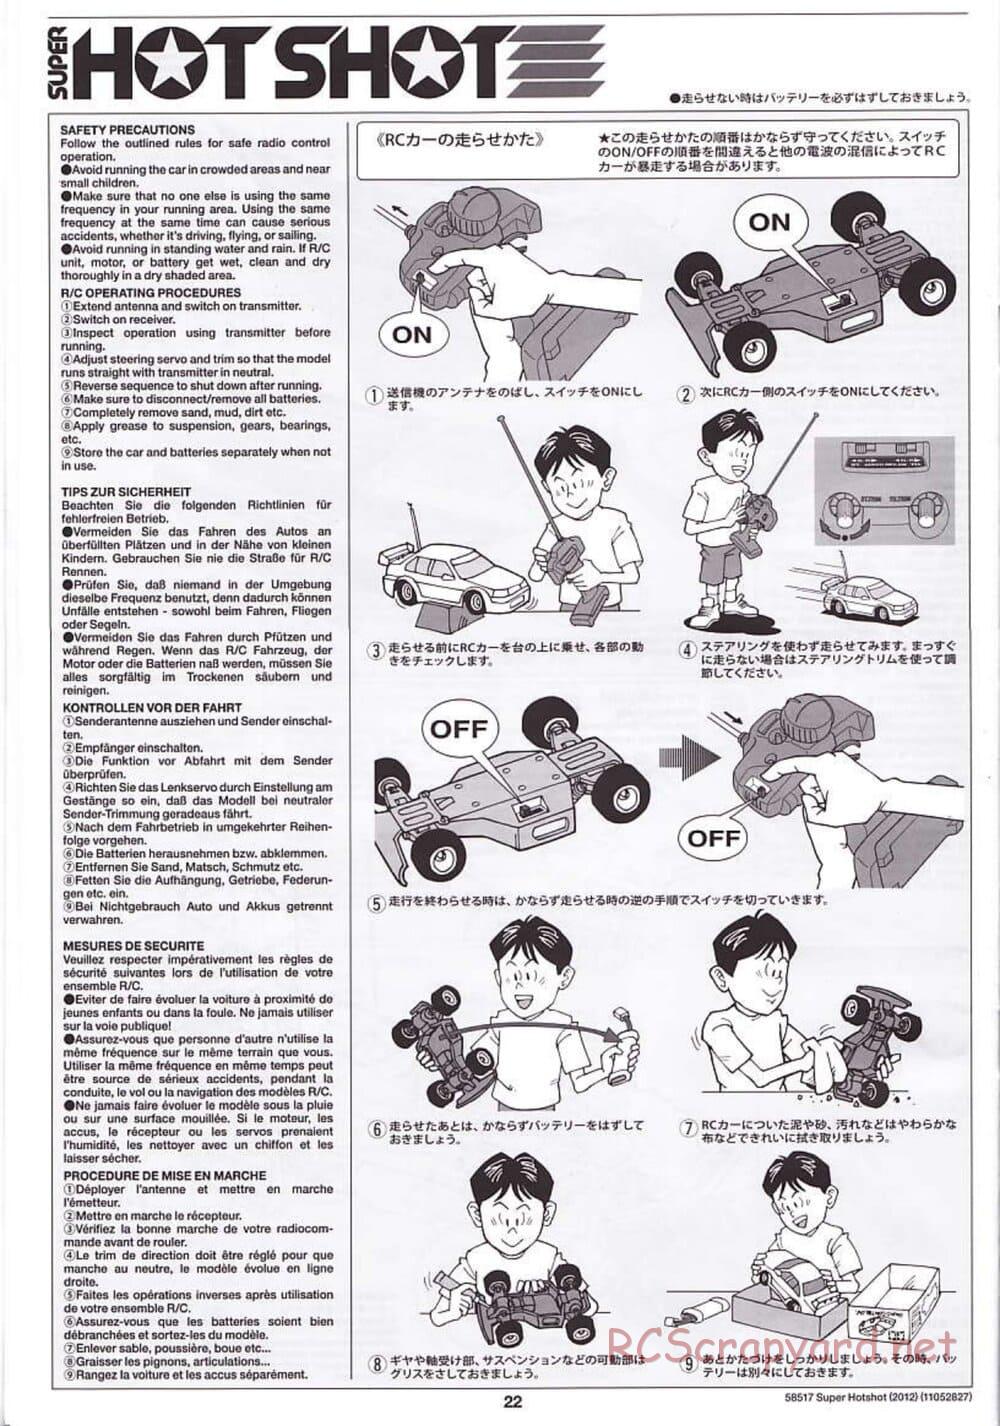 Tamiya - Super Hotshot 2012 - HS Chassis - Manual - Page 22